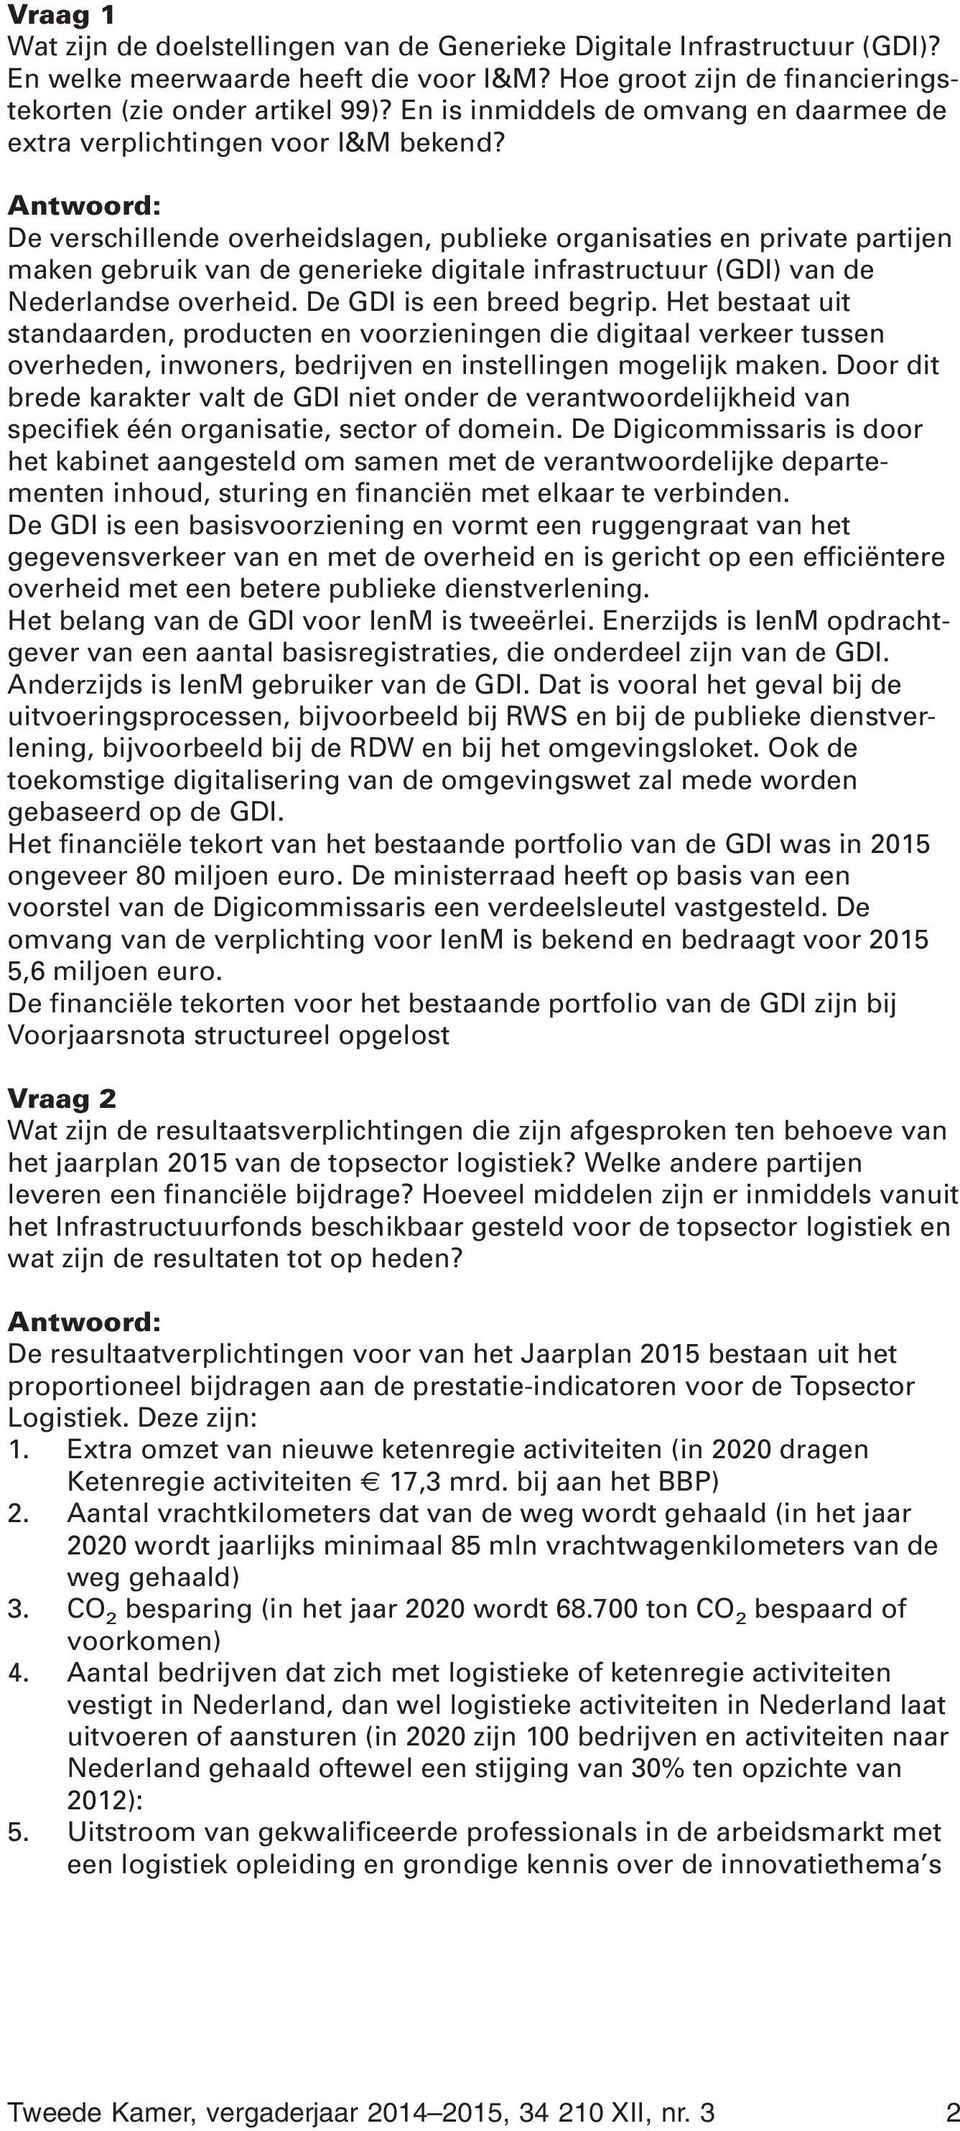 De verschillende overheidslagen, publieke organisaties en private partijen maken gebruik van de generieke digitale infrastructuur (GDI) van de Nederlandse overheid. De GDI is een breed begrip.